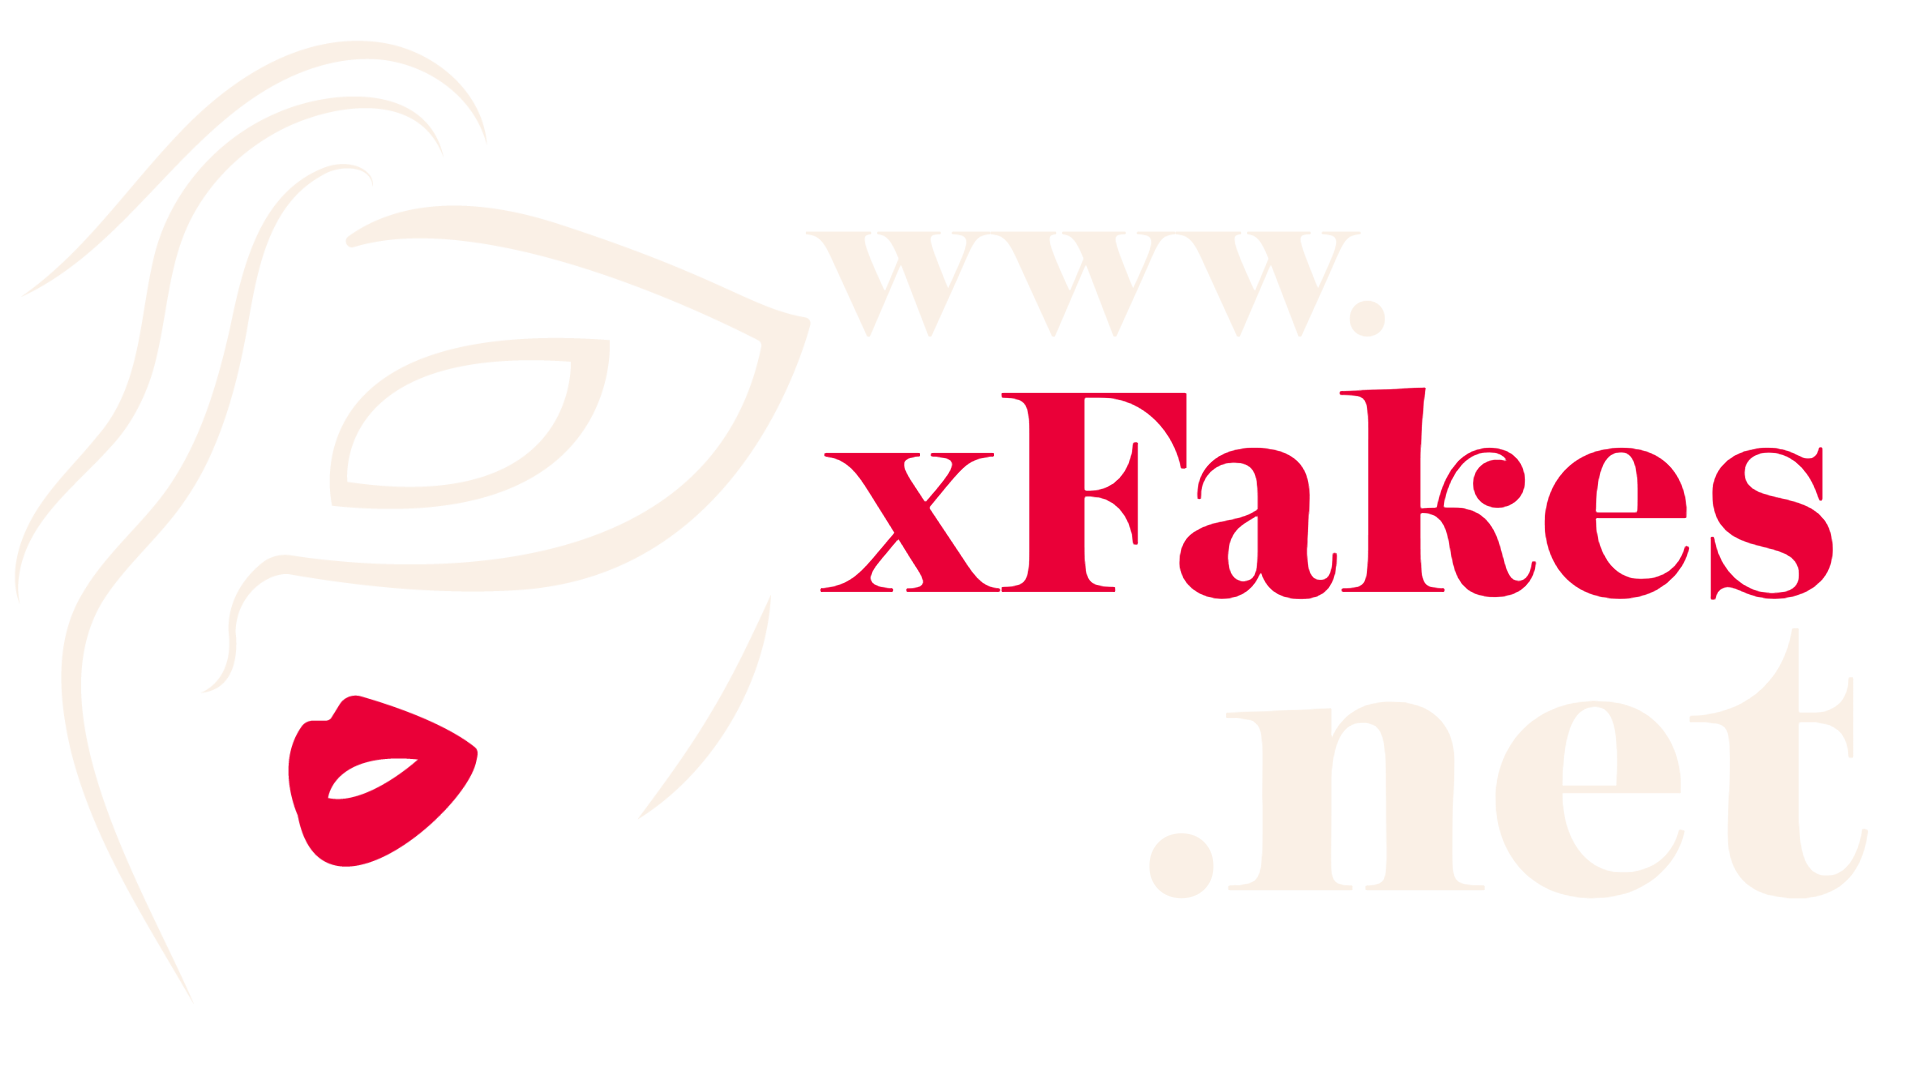 xFakes